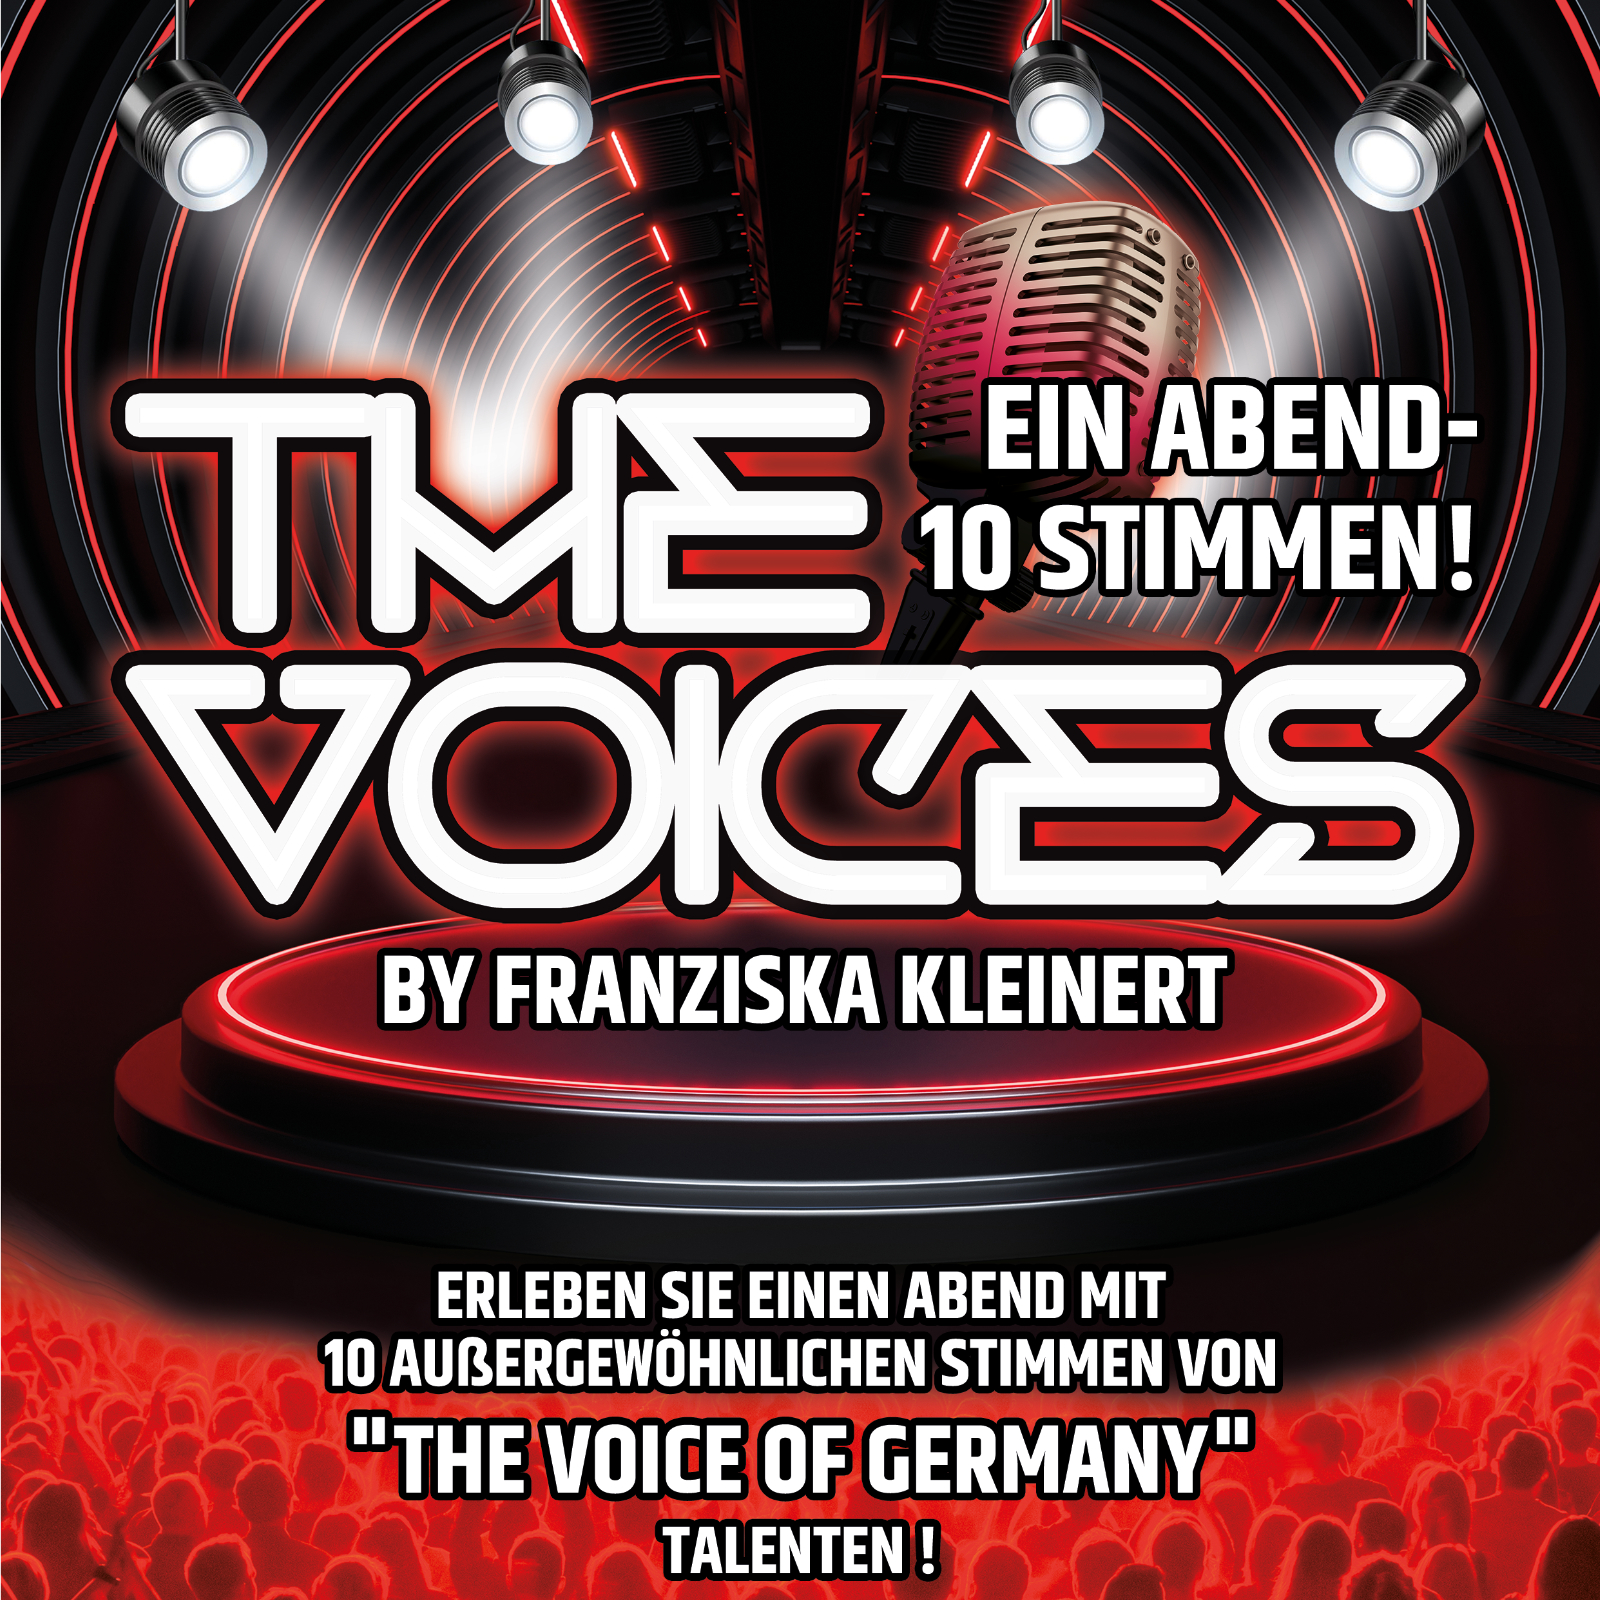 The Voices – Ein Abend – 10 Stimmen